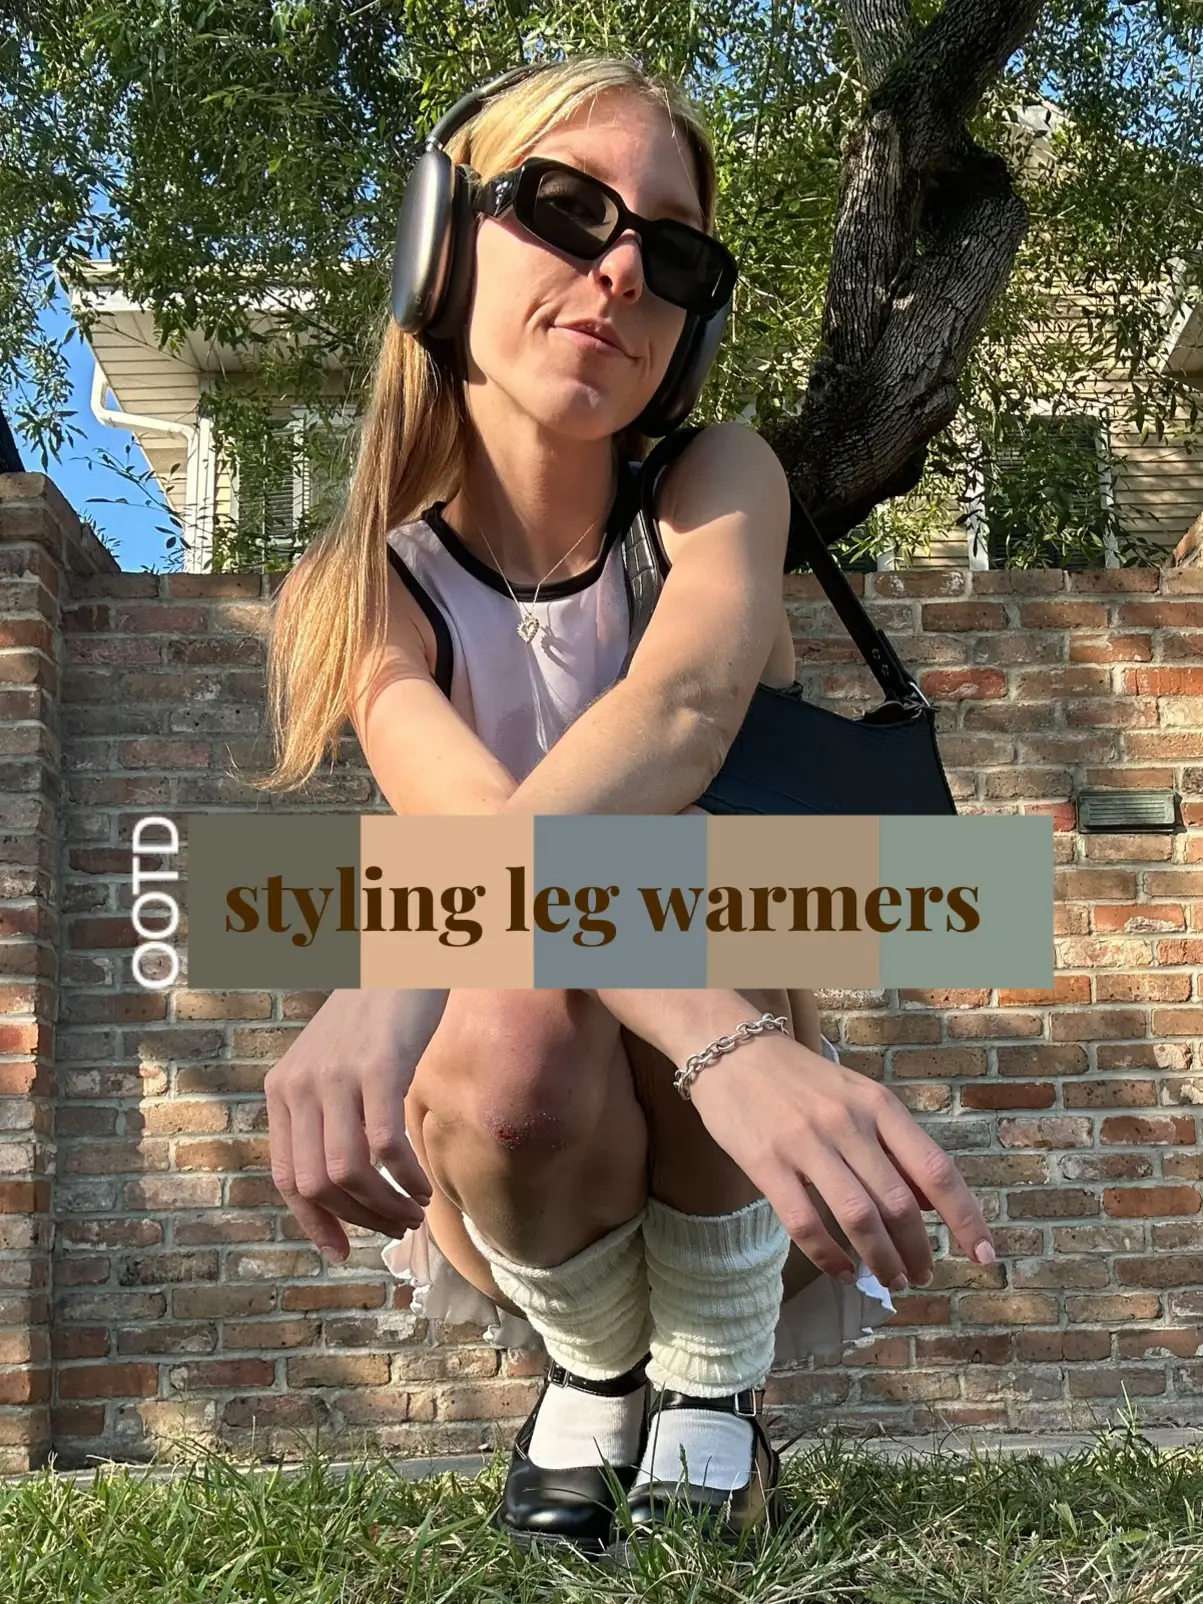 80s leg warmers outfit - Lemon8 Search